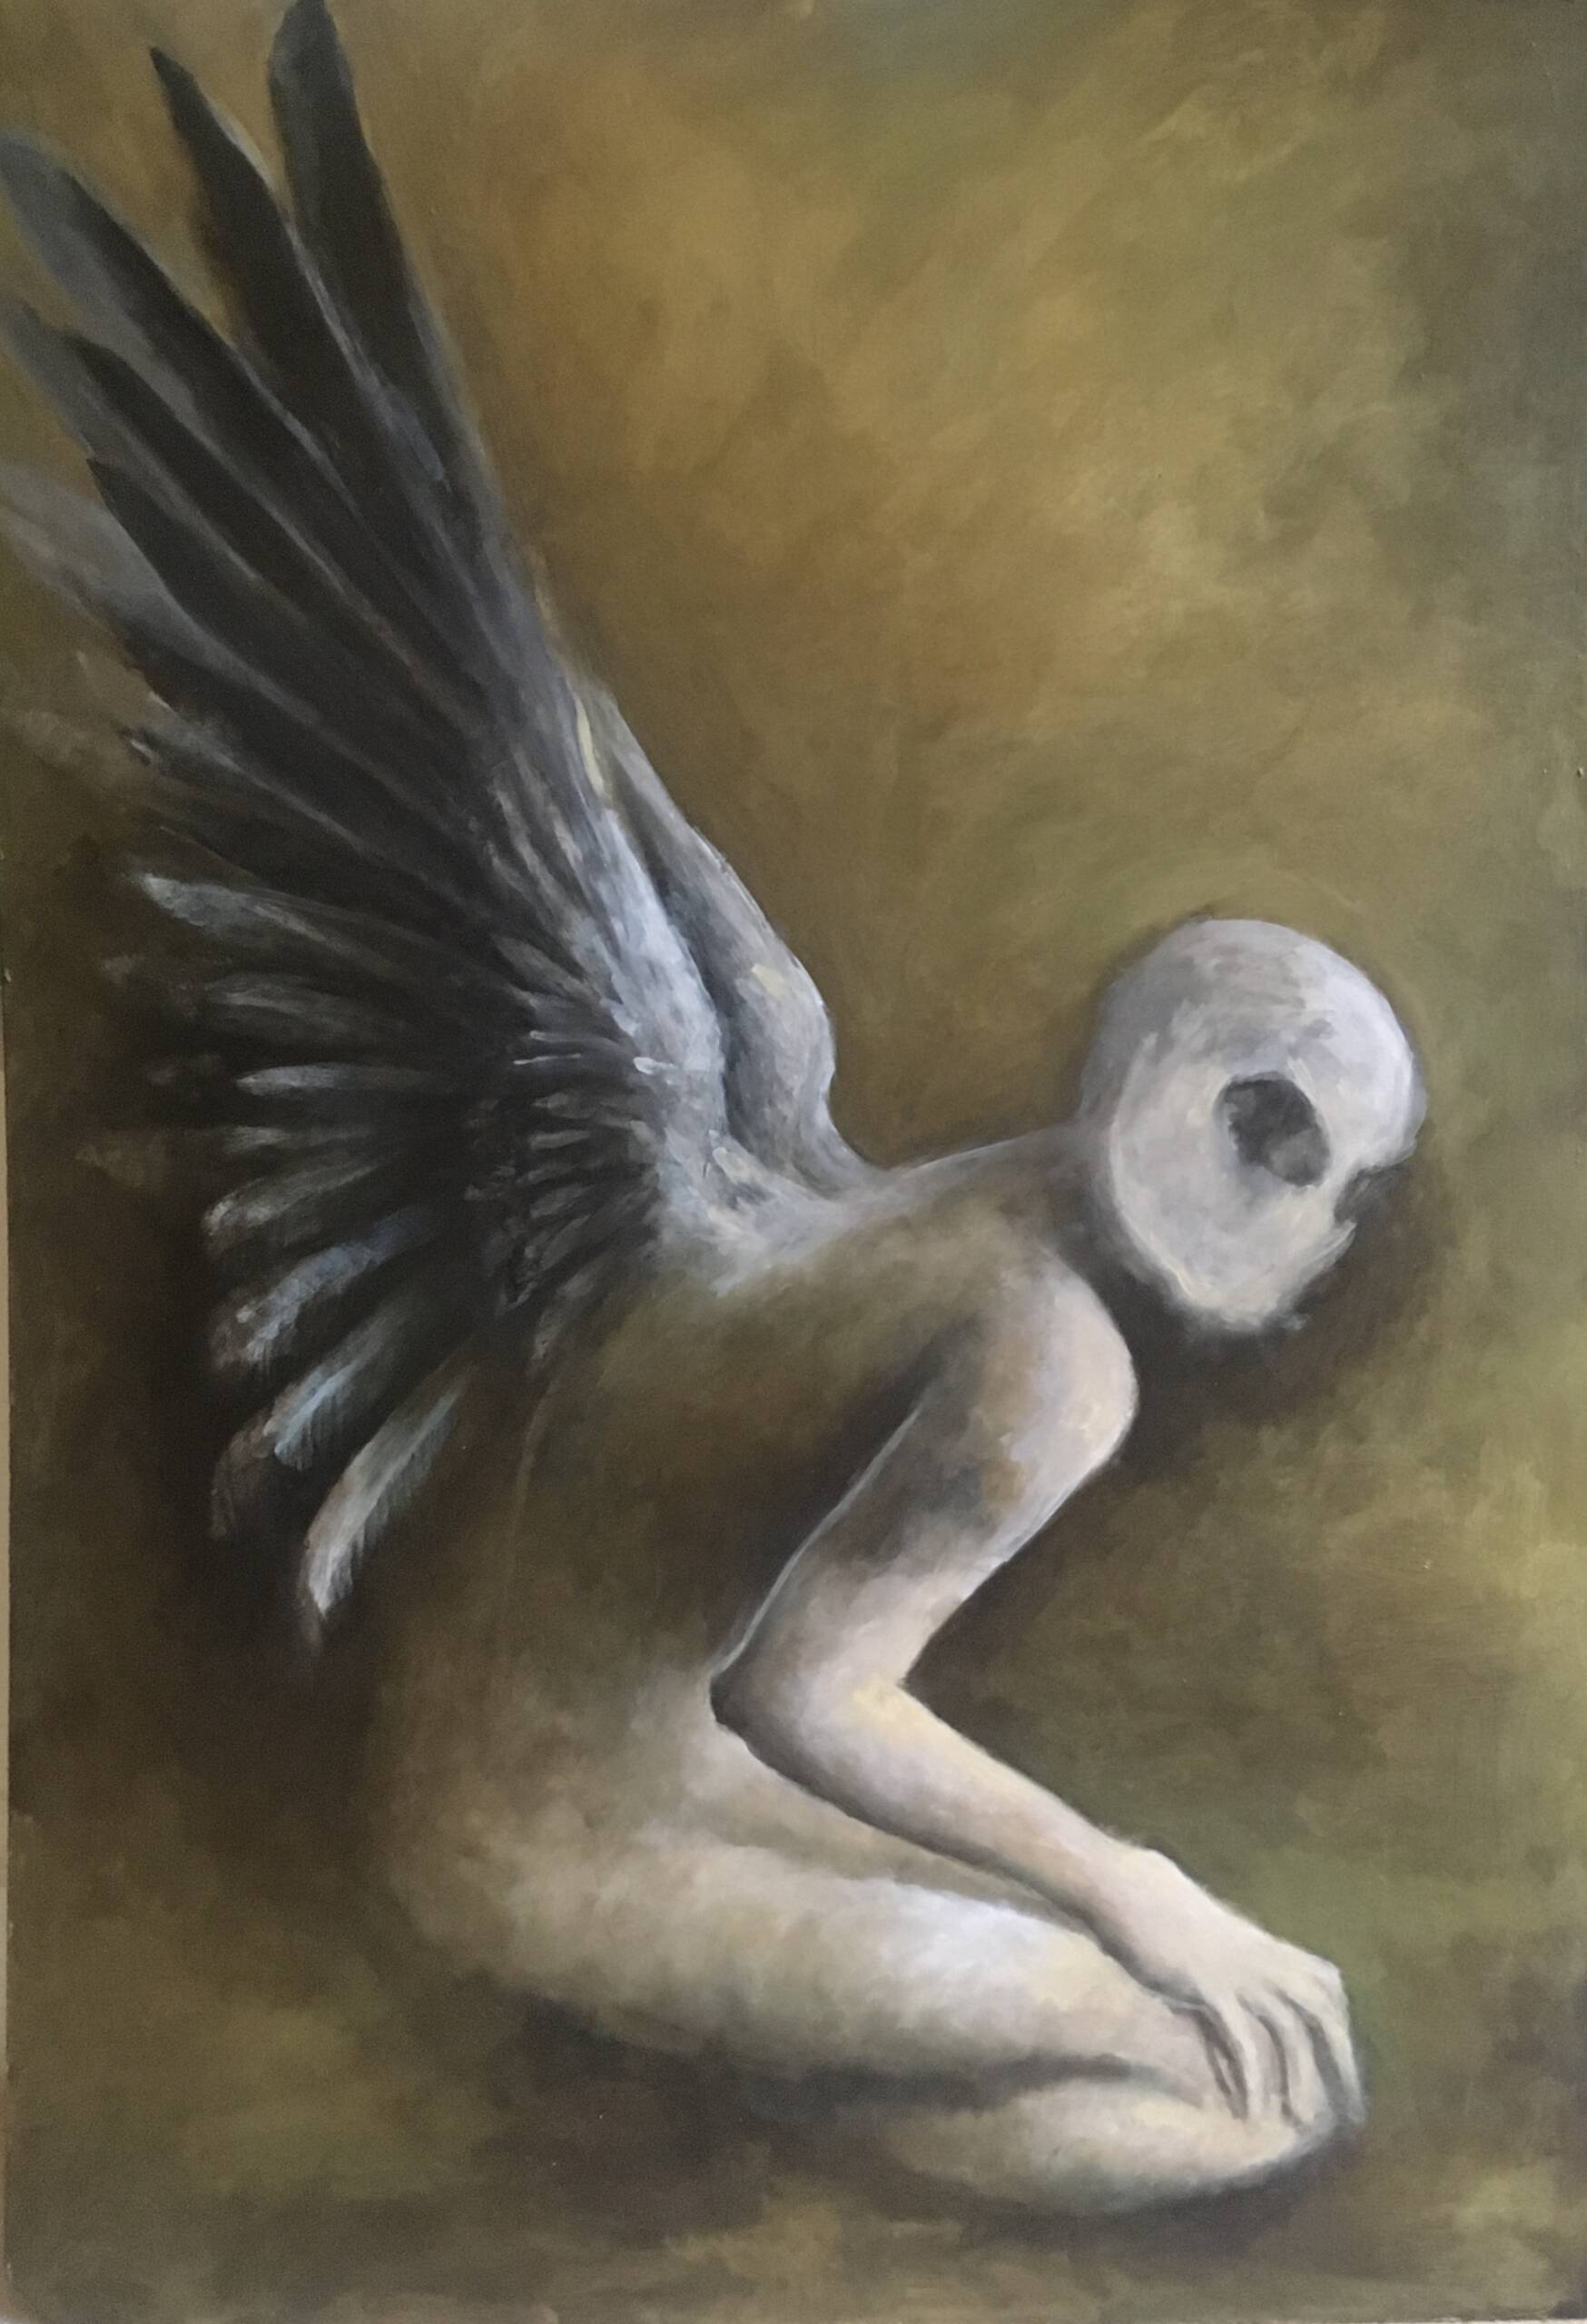 Fallen Angel - The Dark Magazine